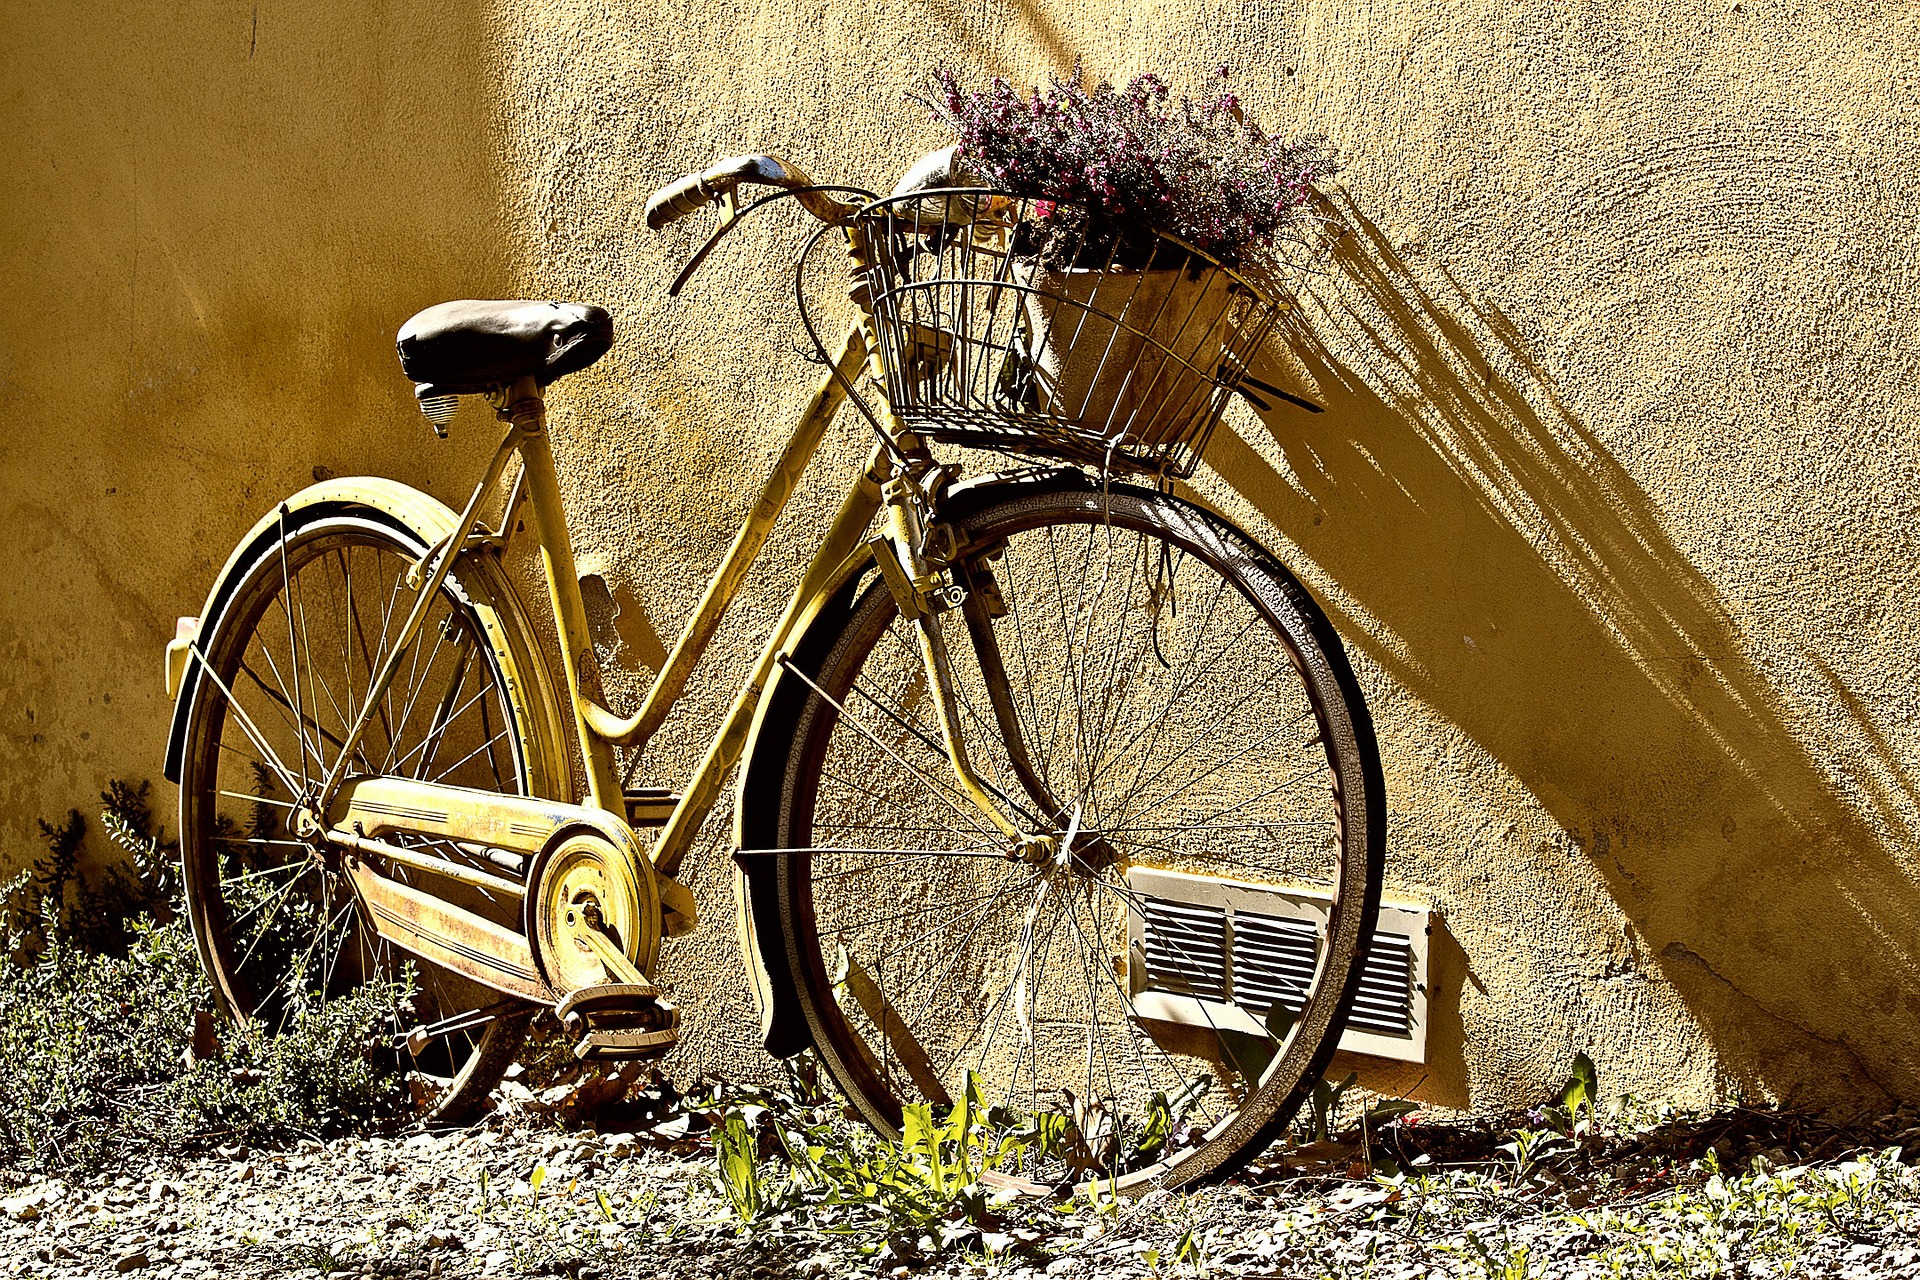 bike-190483_1920.jpg